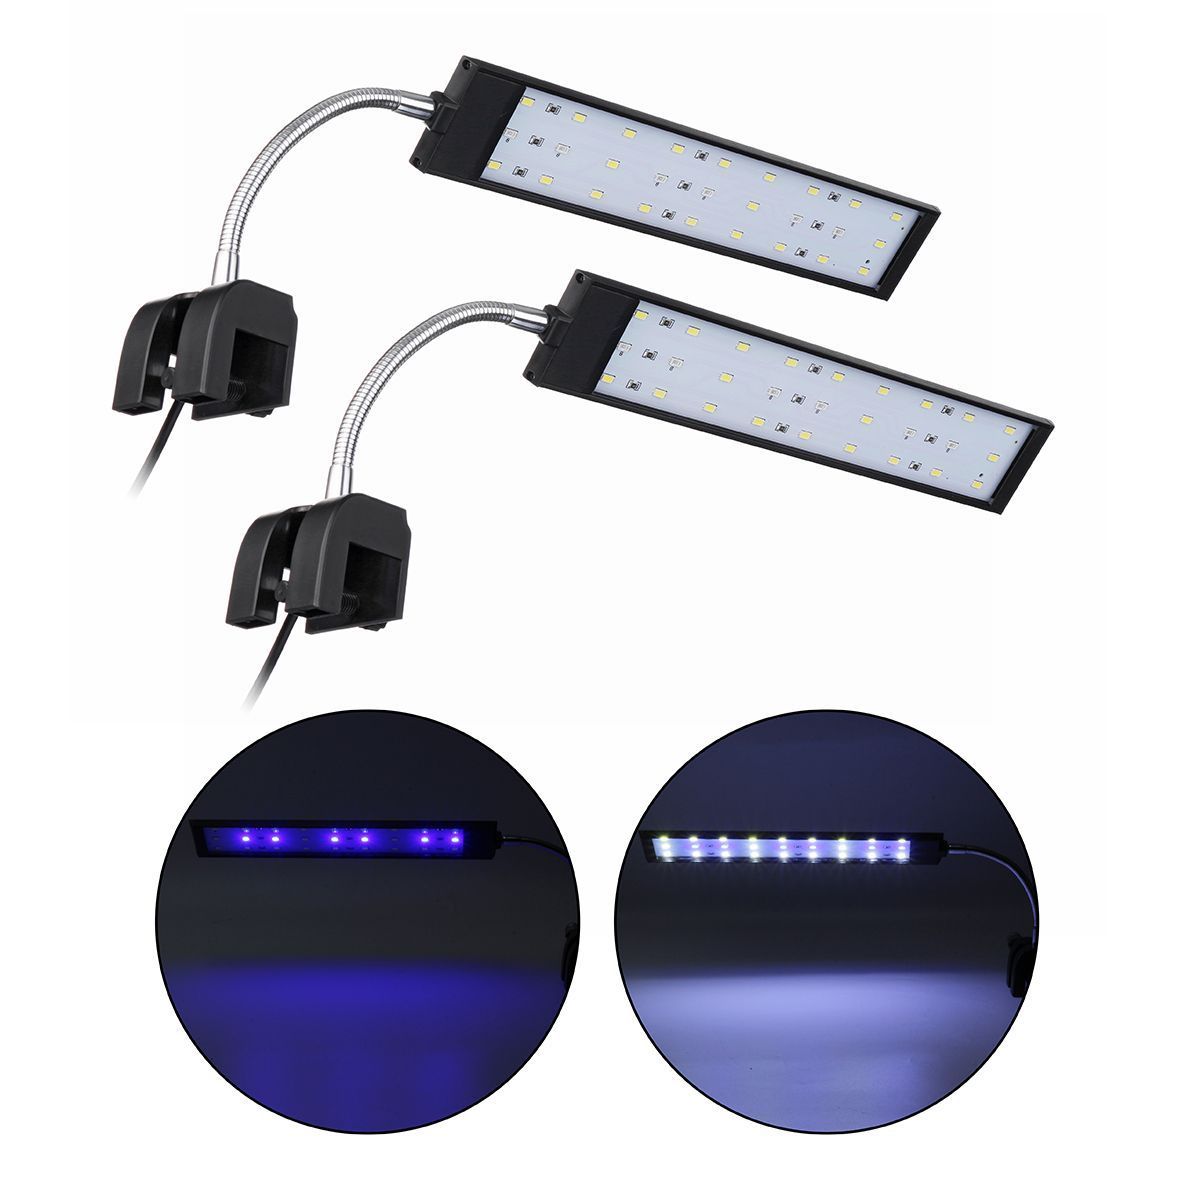 100-240V-10W-Clip-on-LED-Aquarium-Light-Fish-Tank-Decoration-Lighting-Lamp-with-White--Blue-LEDs-Tou-1640561